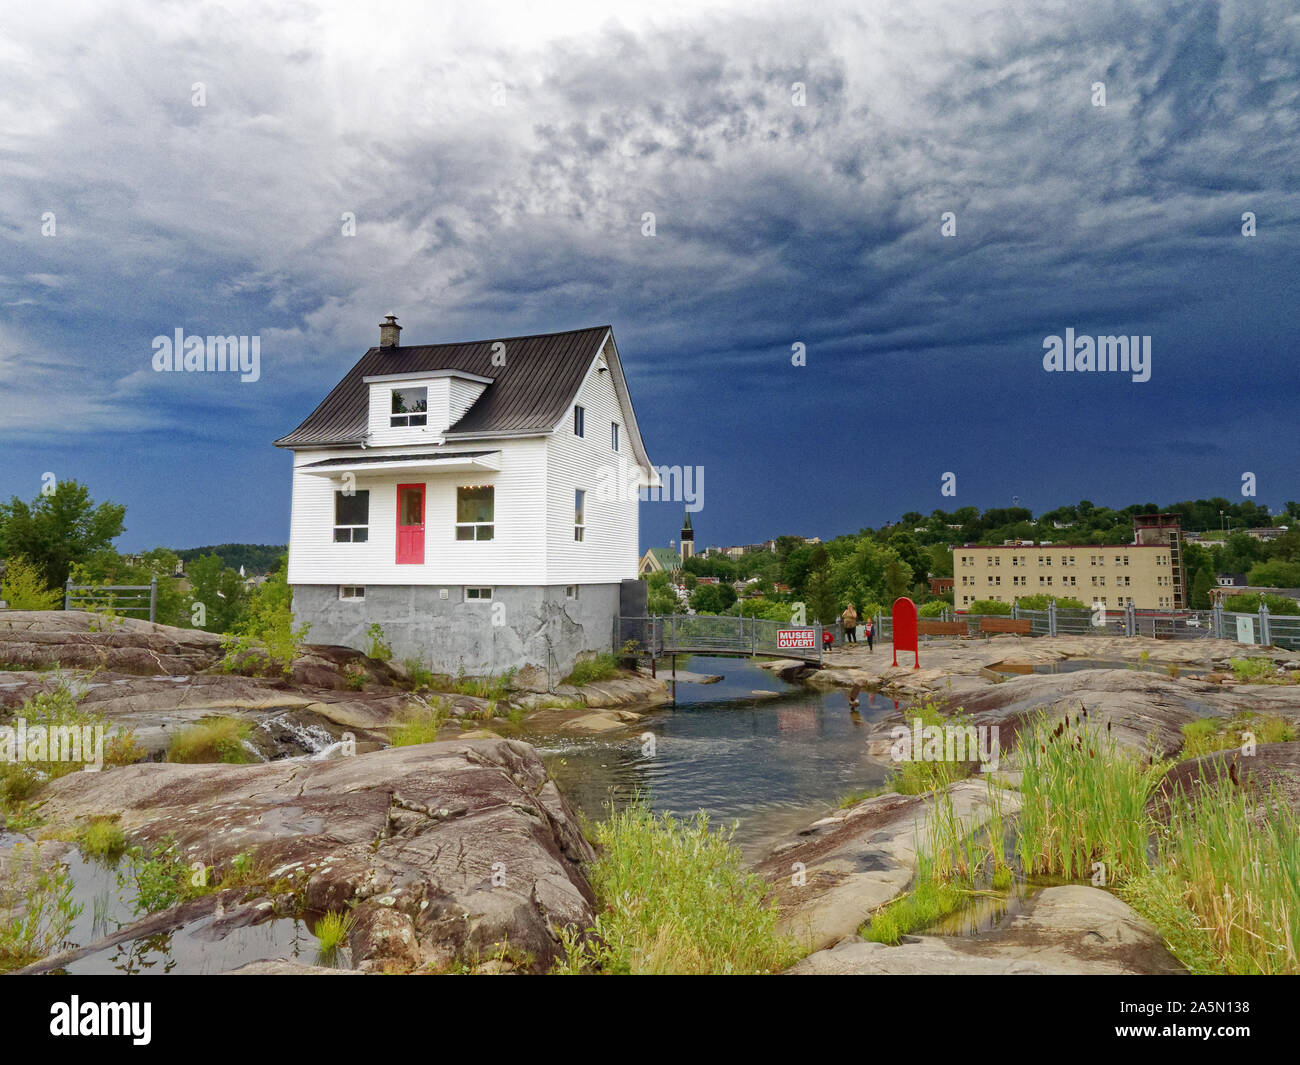 La fameuse petite maison blanche (La Petite Maison Blanche) au Saguenay qui a résisté à l'inondation de 1996, avec un ciel orageux au-delà Banque D'Images